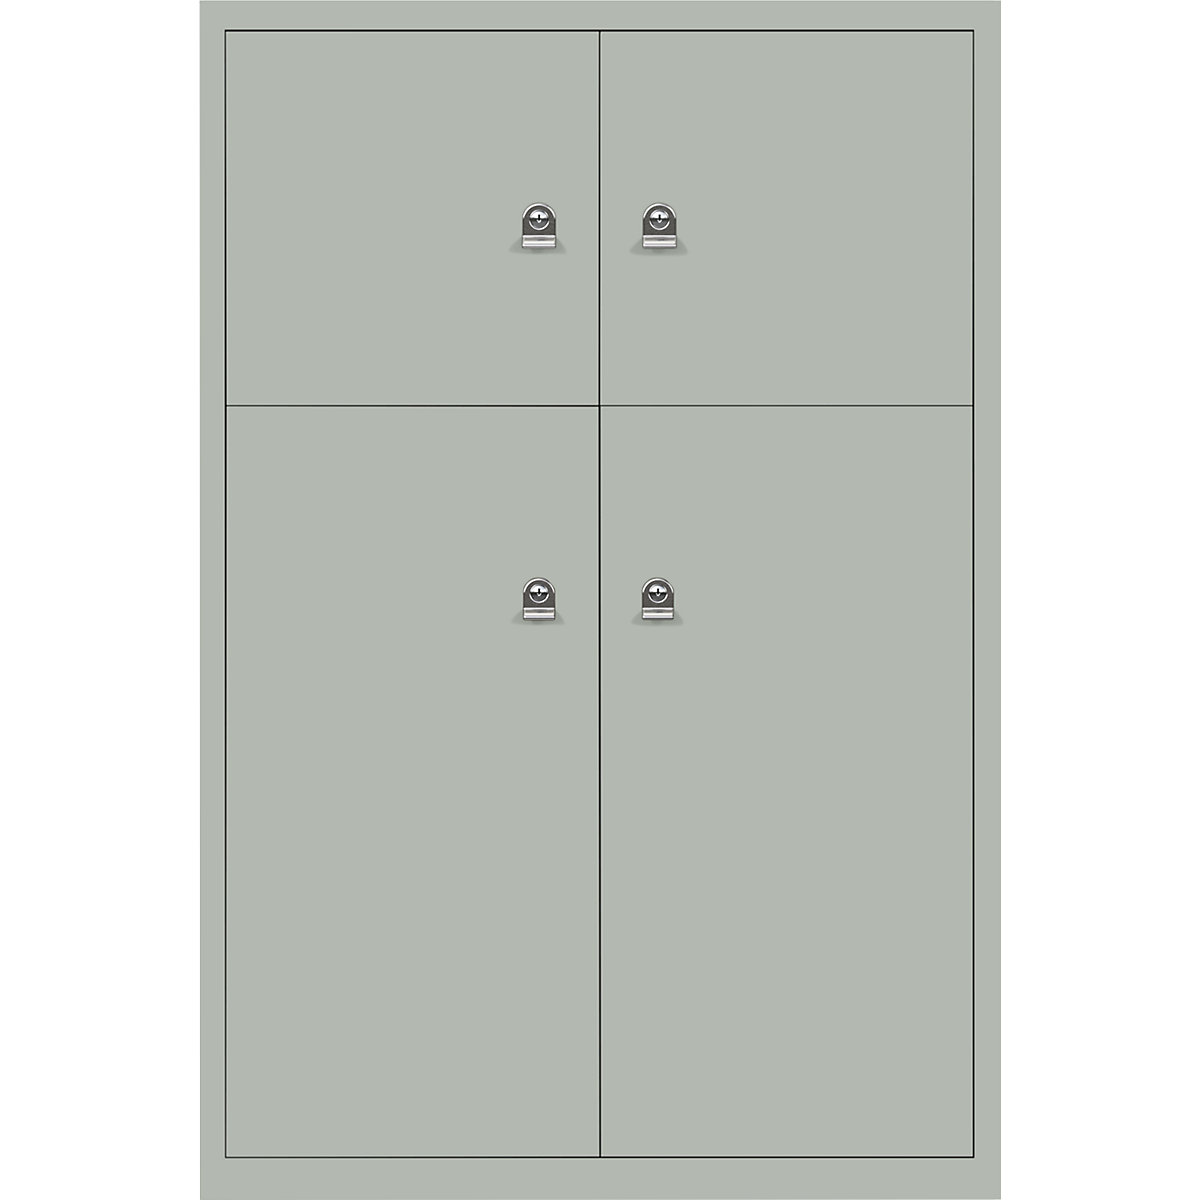 Ormar LateralFile™ Lodge – BISLEY, s 4 pretinca sa zaključavanjem, visina 2 x 375 mm, 2 x 755 mm, u jorško sivoj boji-21